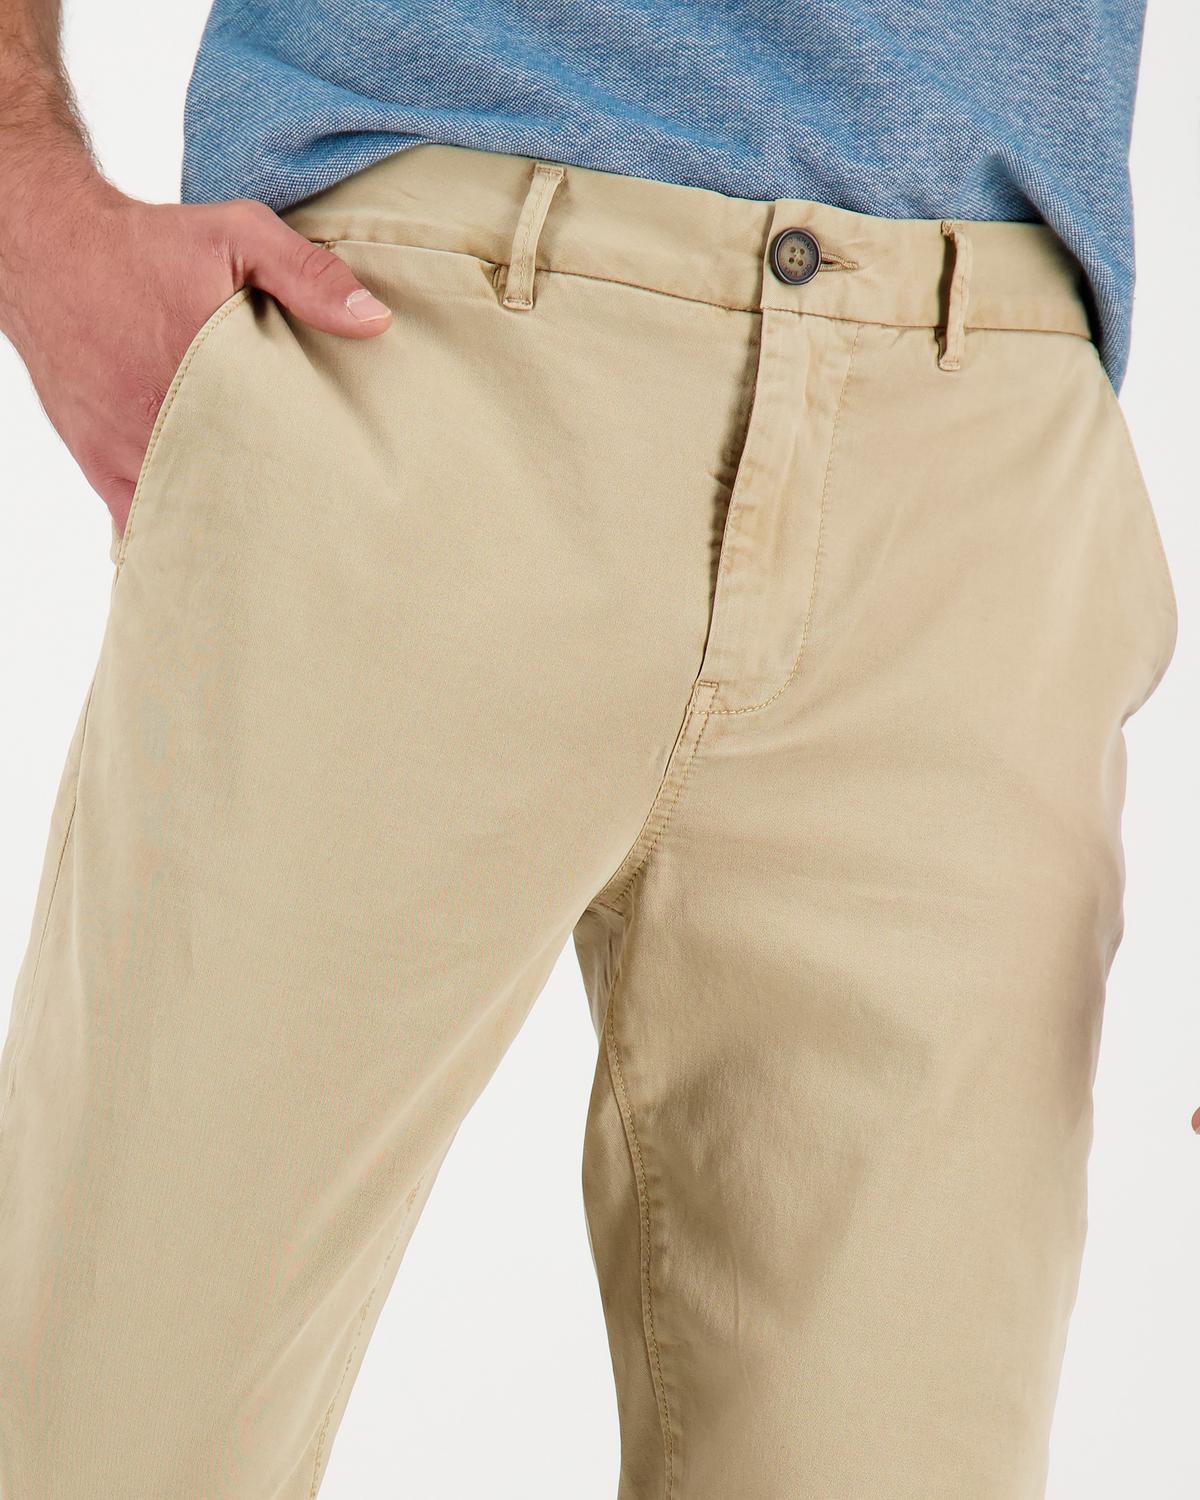 Kiro 1 Pants Mens -  Khaki